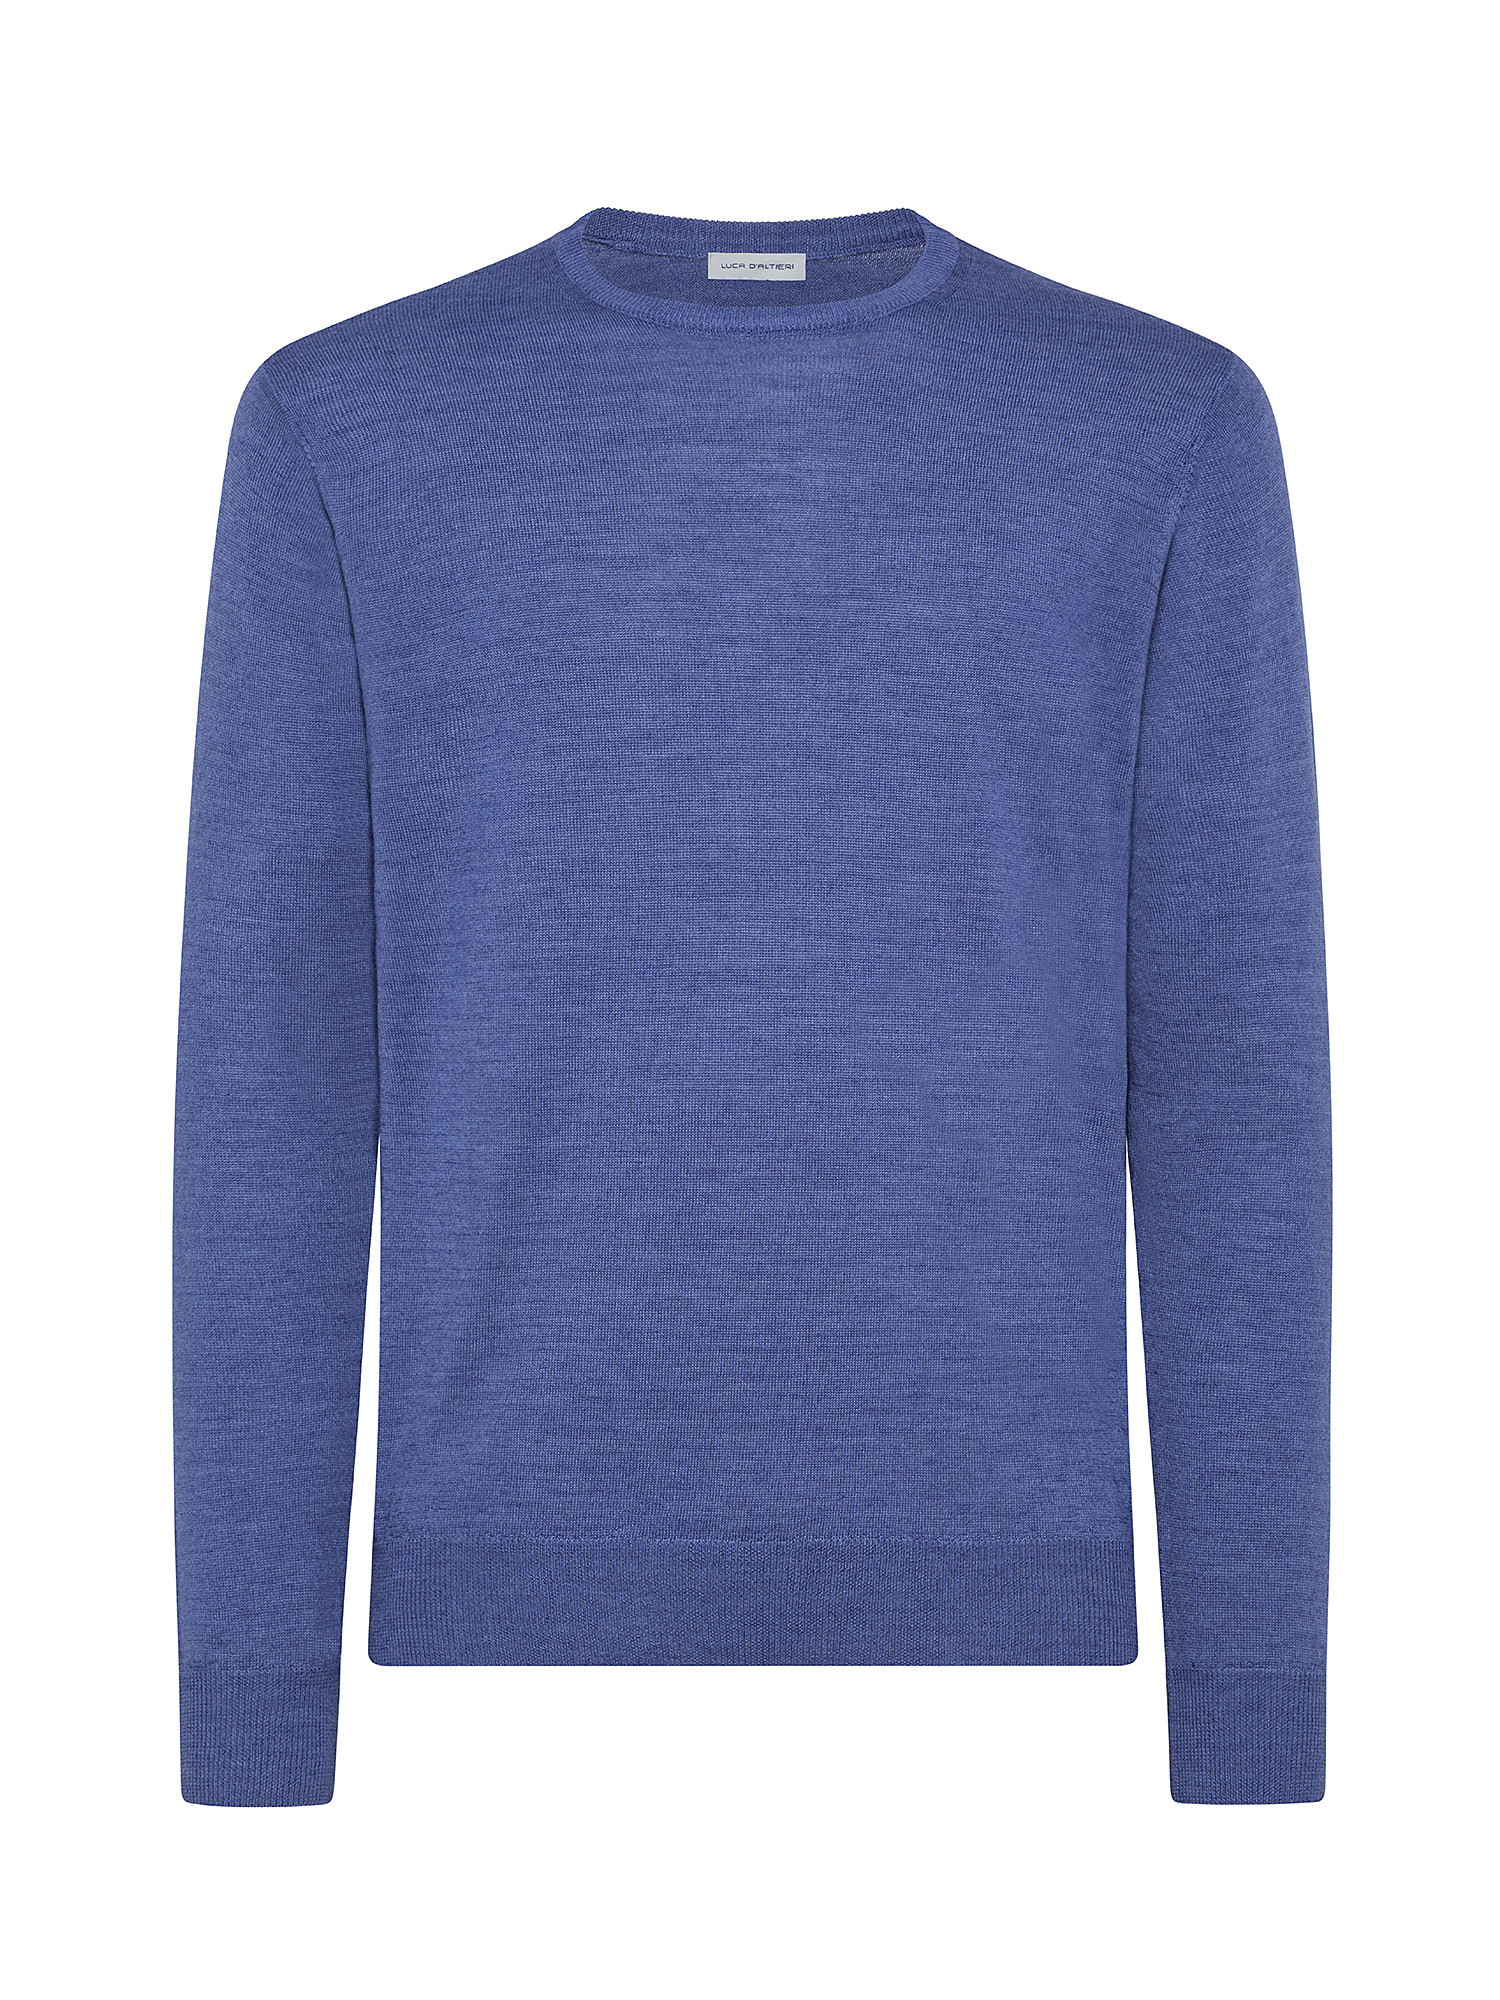 Merino Blend crewneck sweater - Machine washable, Aviation Blue, large image number 0